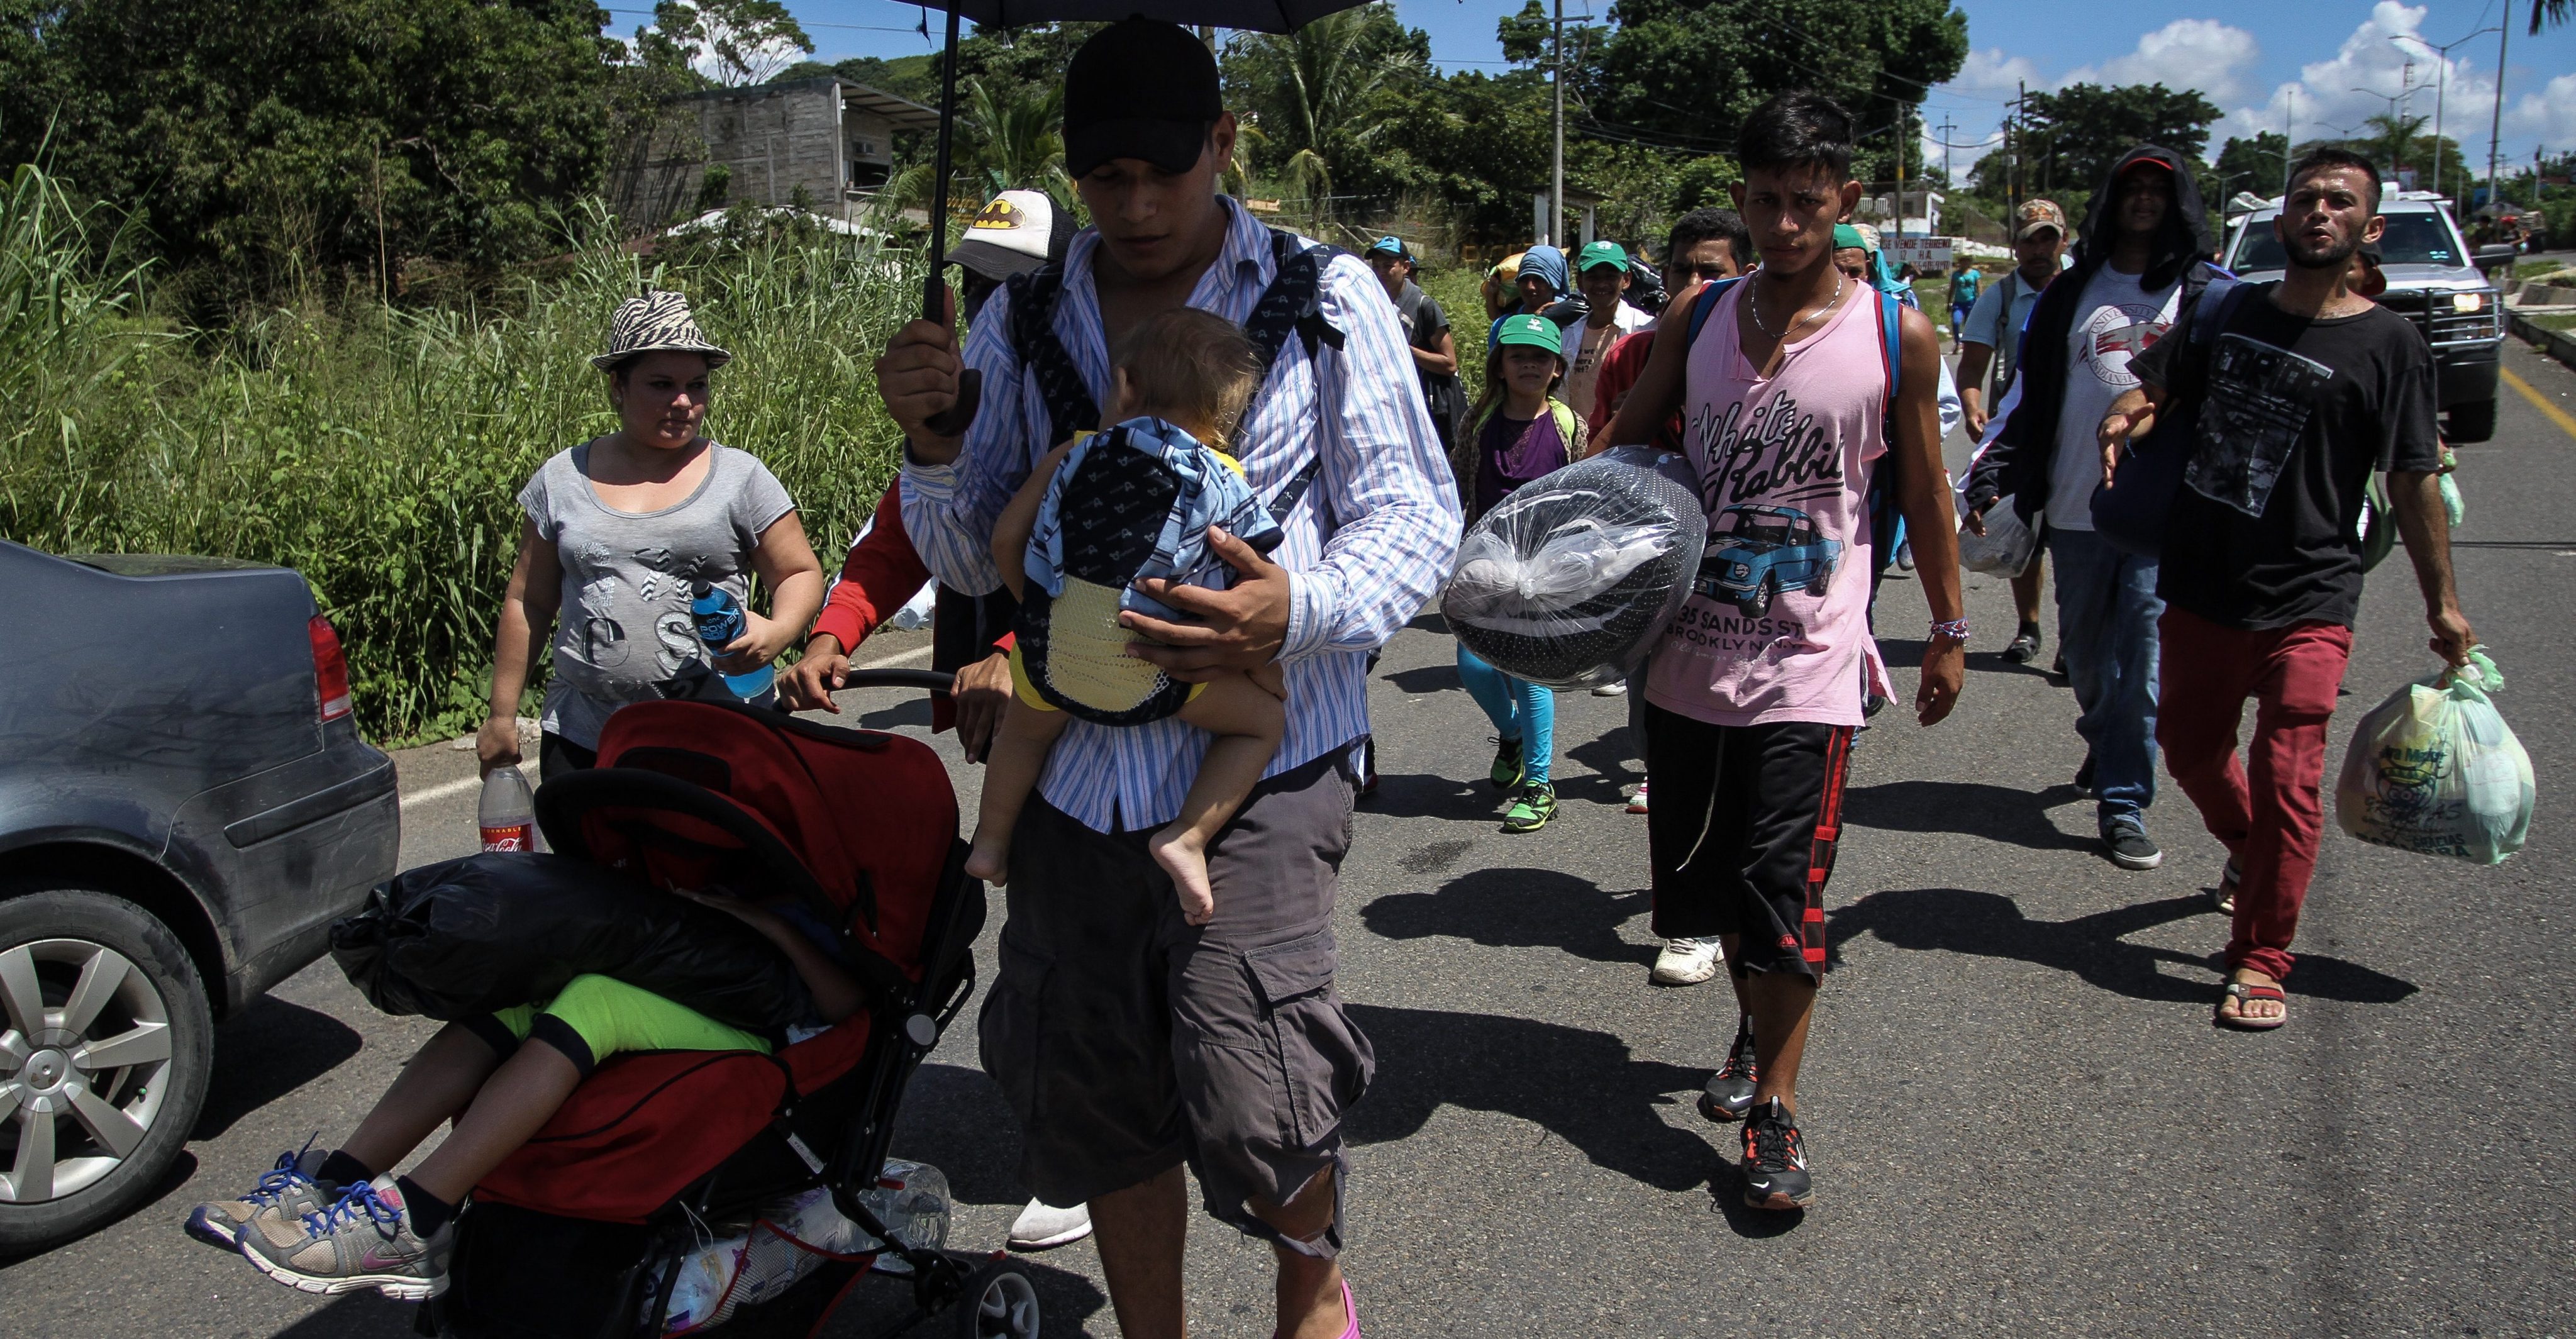 El 52% de los mexicanos apoya la presencia de la caravana migrante